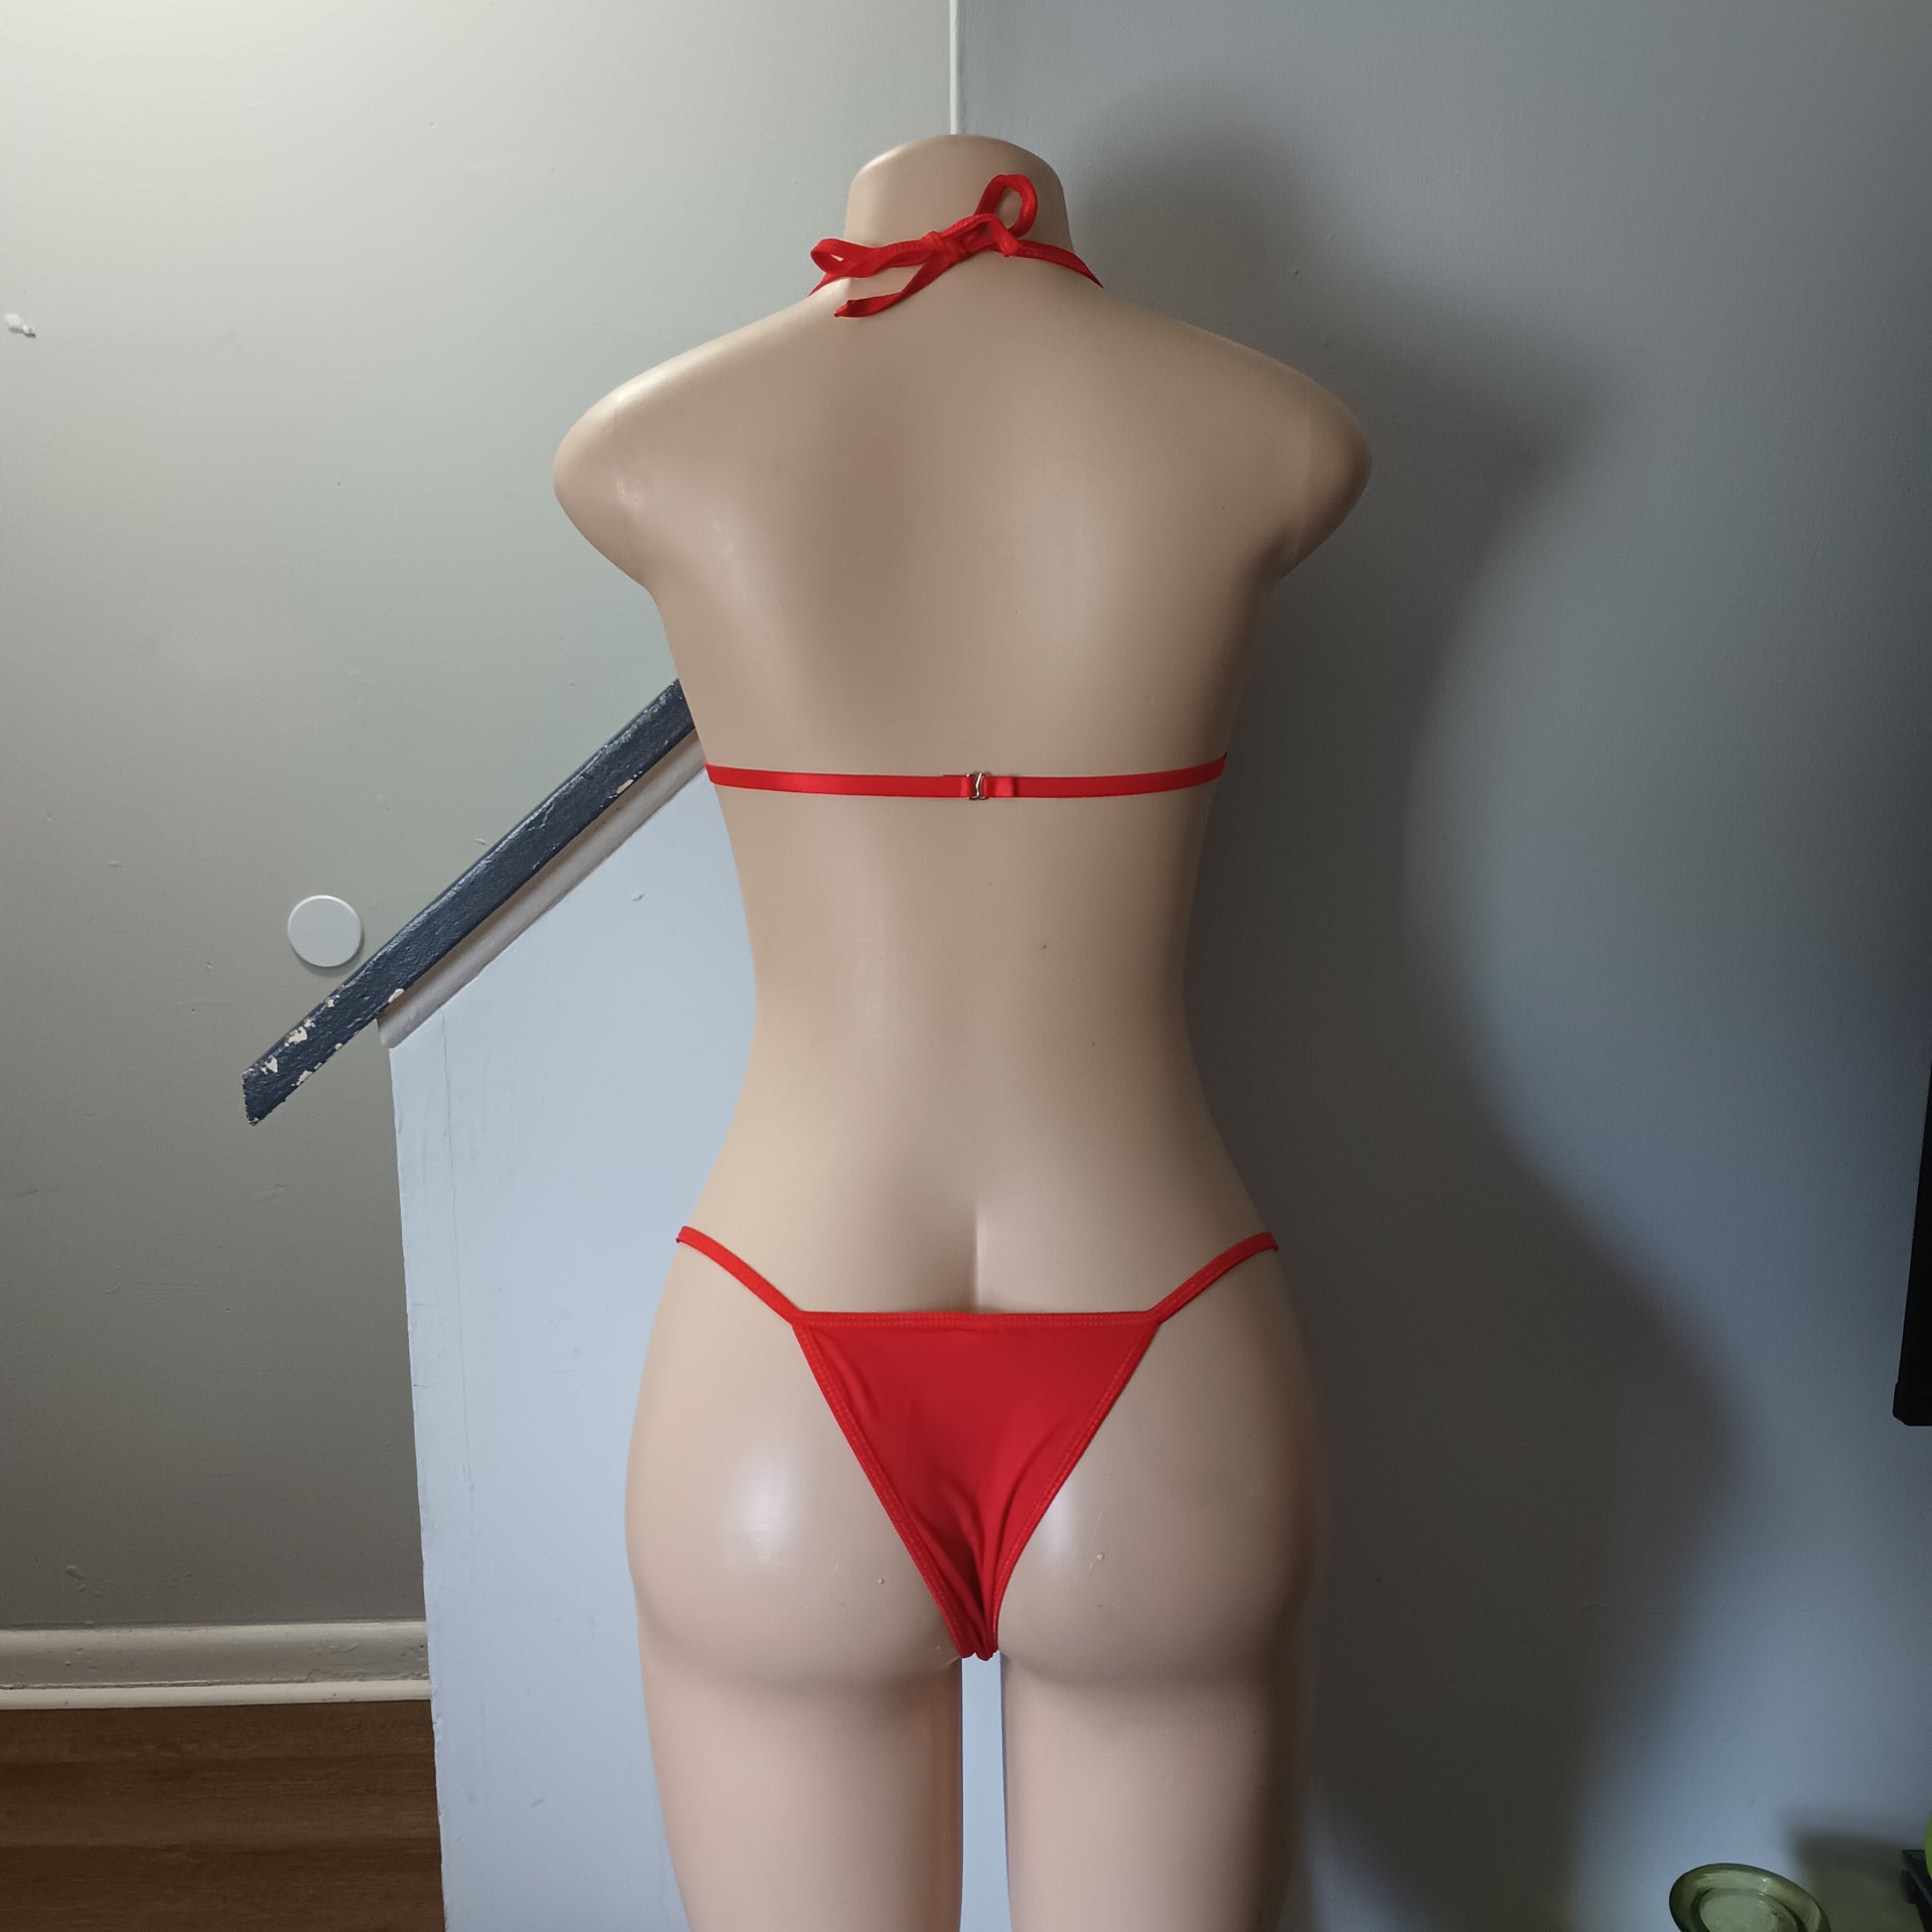 Red bow lingerie set – Hustlerexprezz